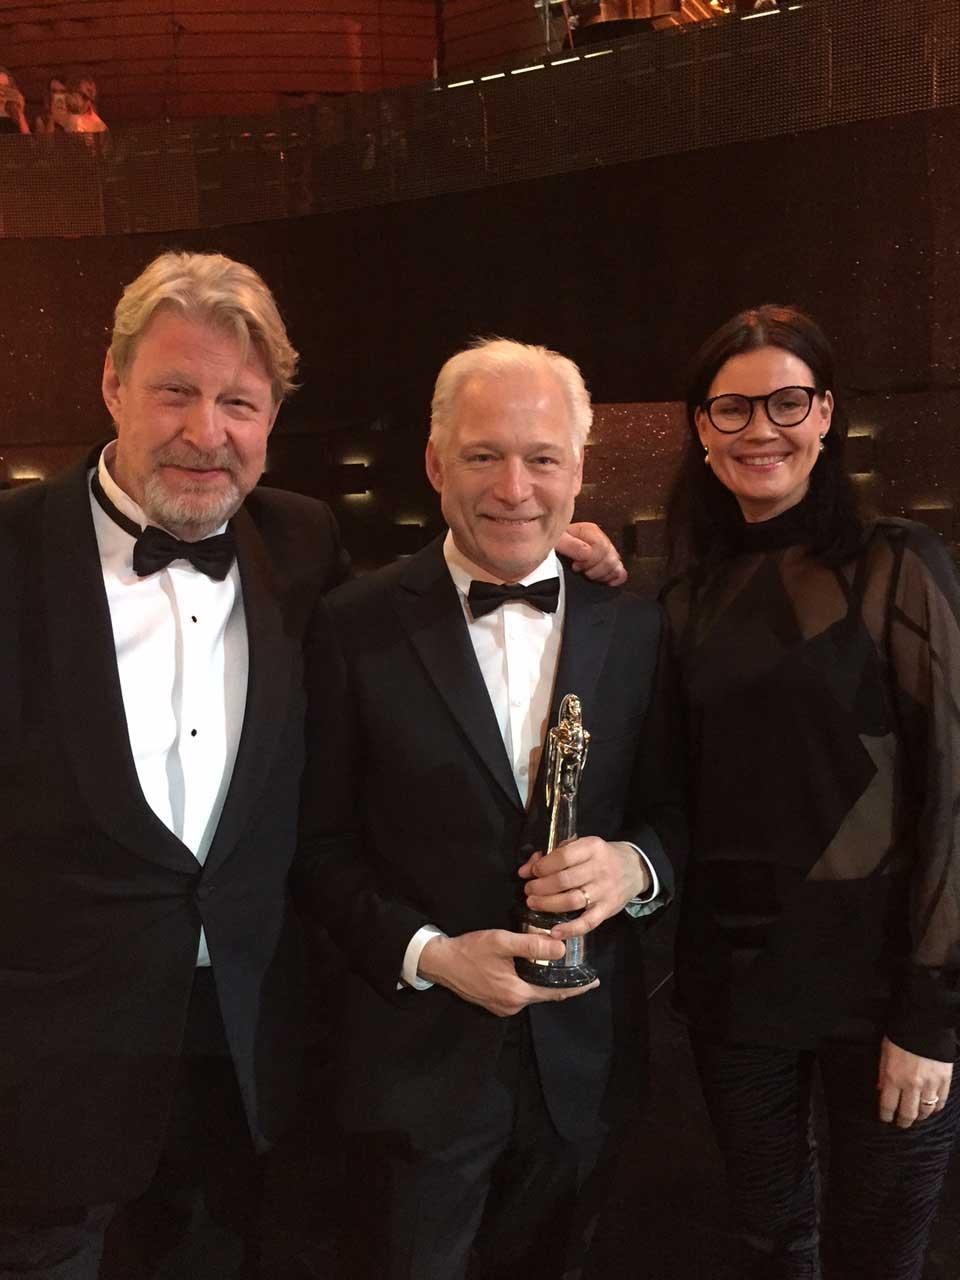 Rolf Lassgård (”Ove”), regissören Hannes Holm och producenten Annica Bellander tog emot priset i Polen.